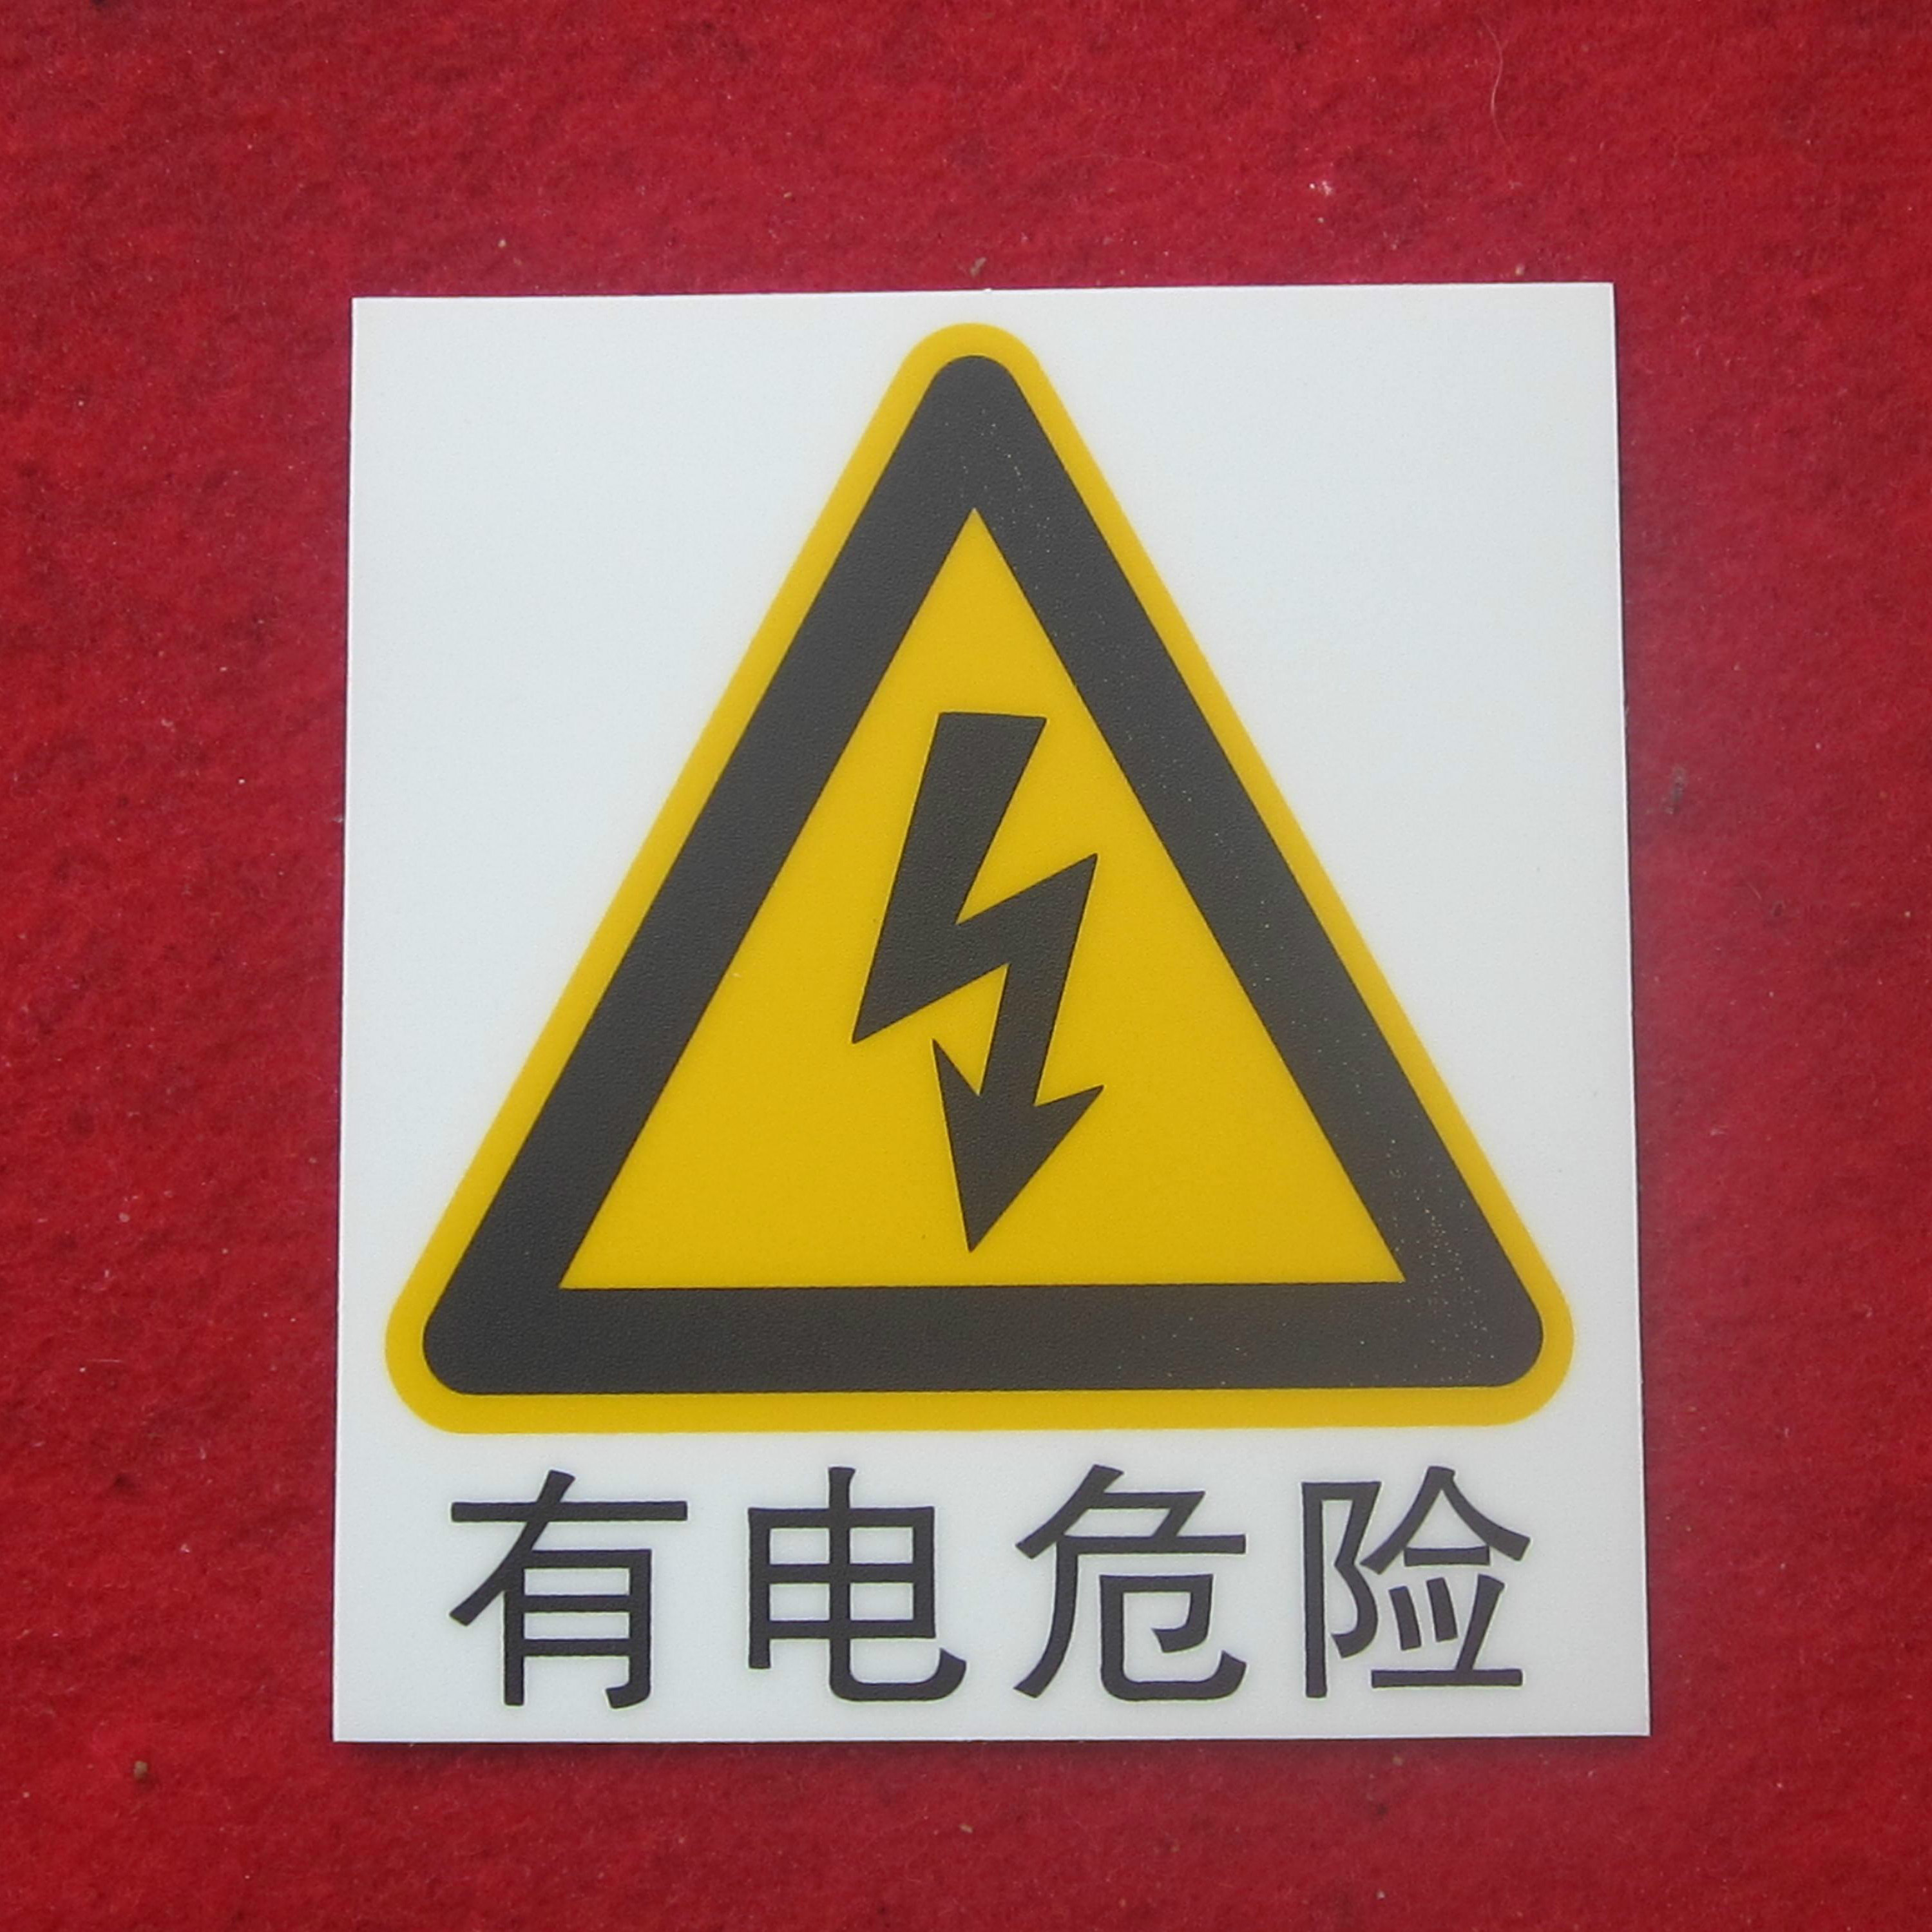 当心触电/有电危险/安全用电警示标志牌PVC板背胶11.5x13cm验厂用